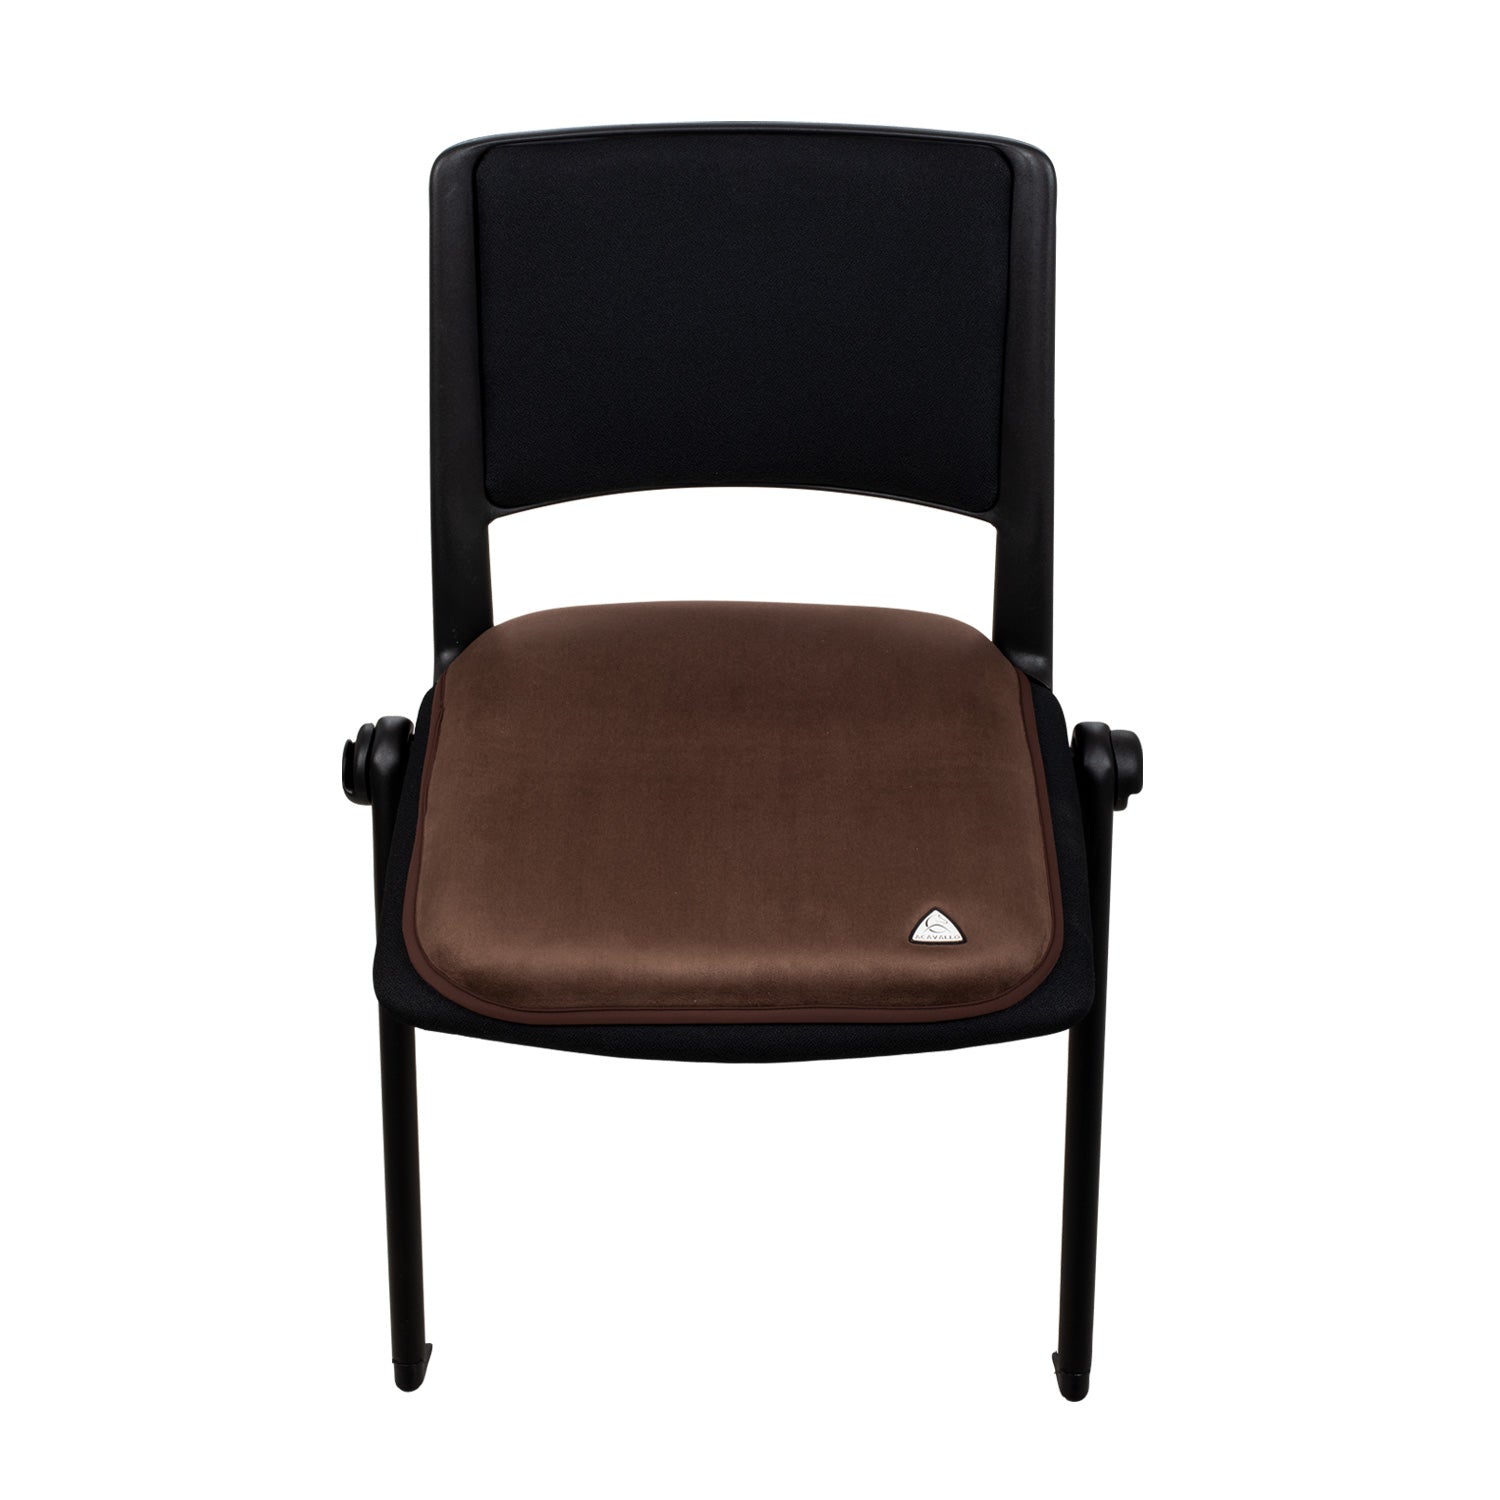 Stull Kissen Chair gel seat saver - Reitstiefel Kandel - Dein Reitshop